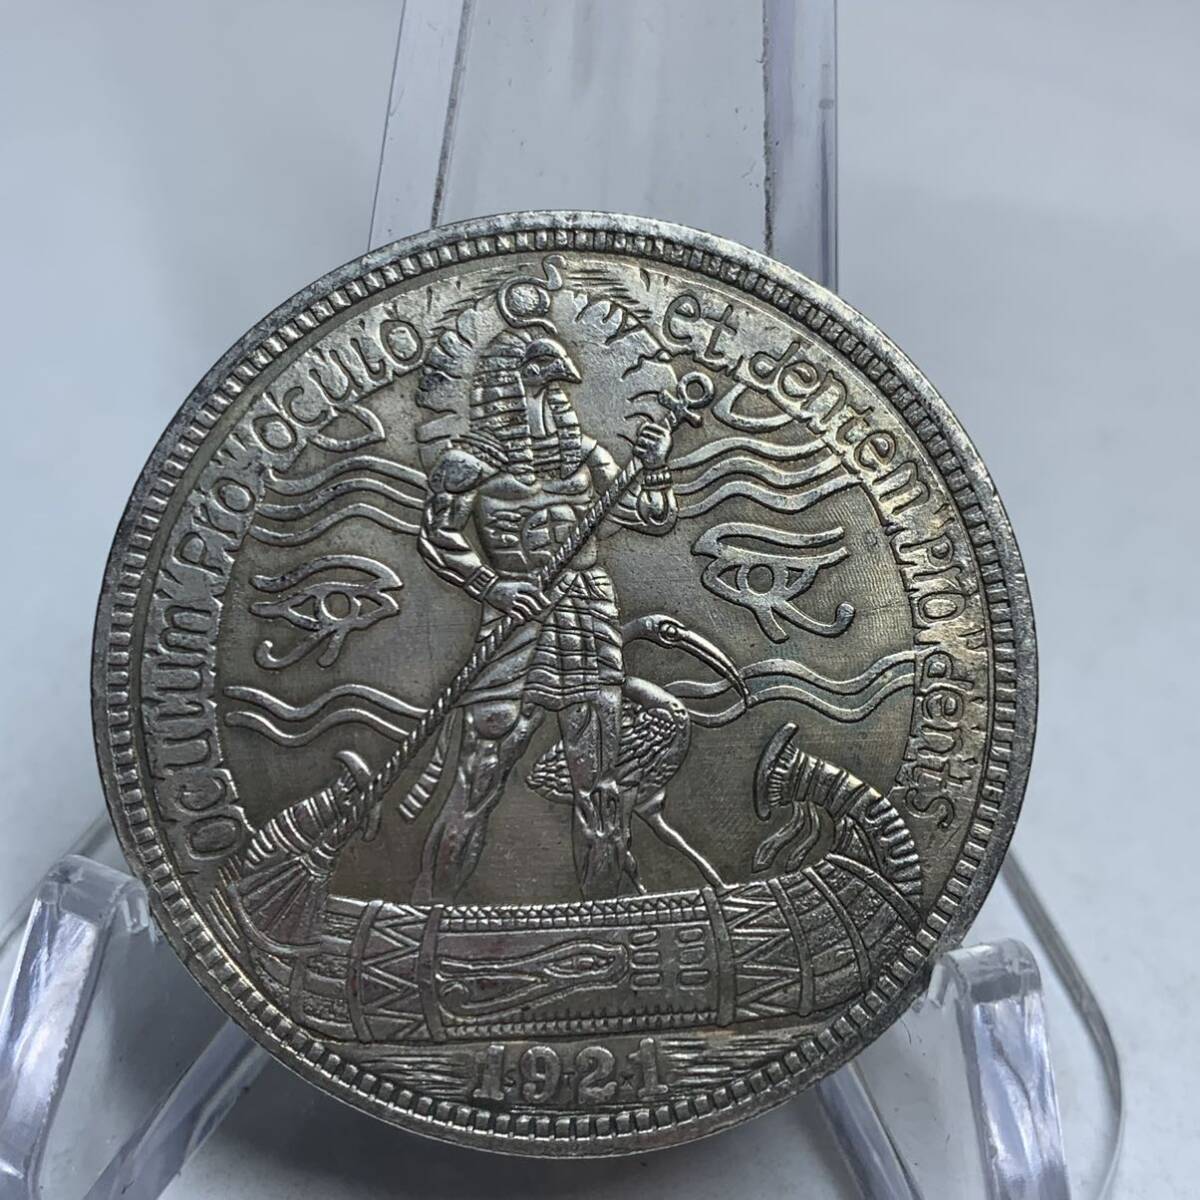 WX1472流浪幣 エジプト 天眼狼 鷹紋 外国硬貨 貿易銀 海外古銭 コレクションコイン 貨幣 重さ約22g_画像1